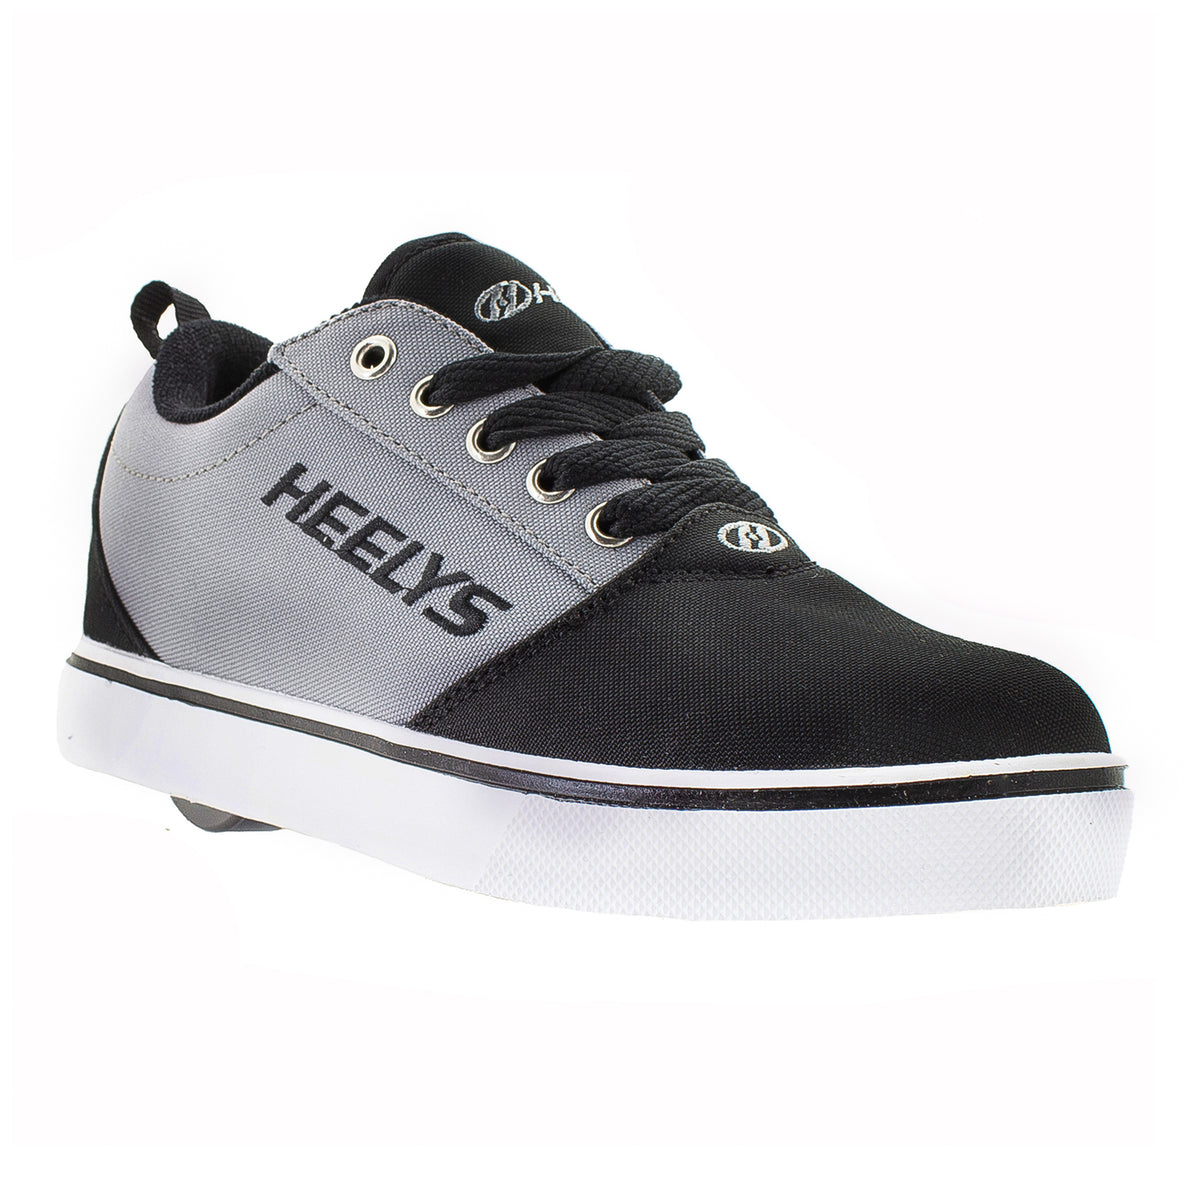 HEELYS Unisex Kids' Pro 20 Wheeled Shoe Black/Grey - HE100761H BLACK/ GREY - BLACK/ GREY, 7 Little Kid